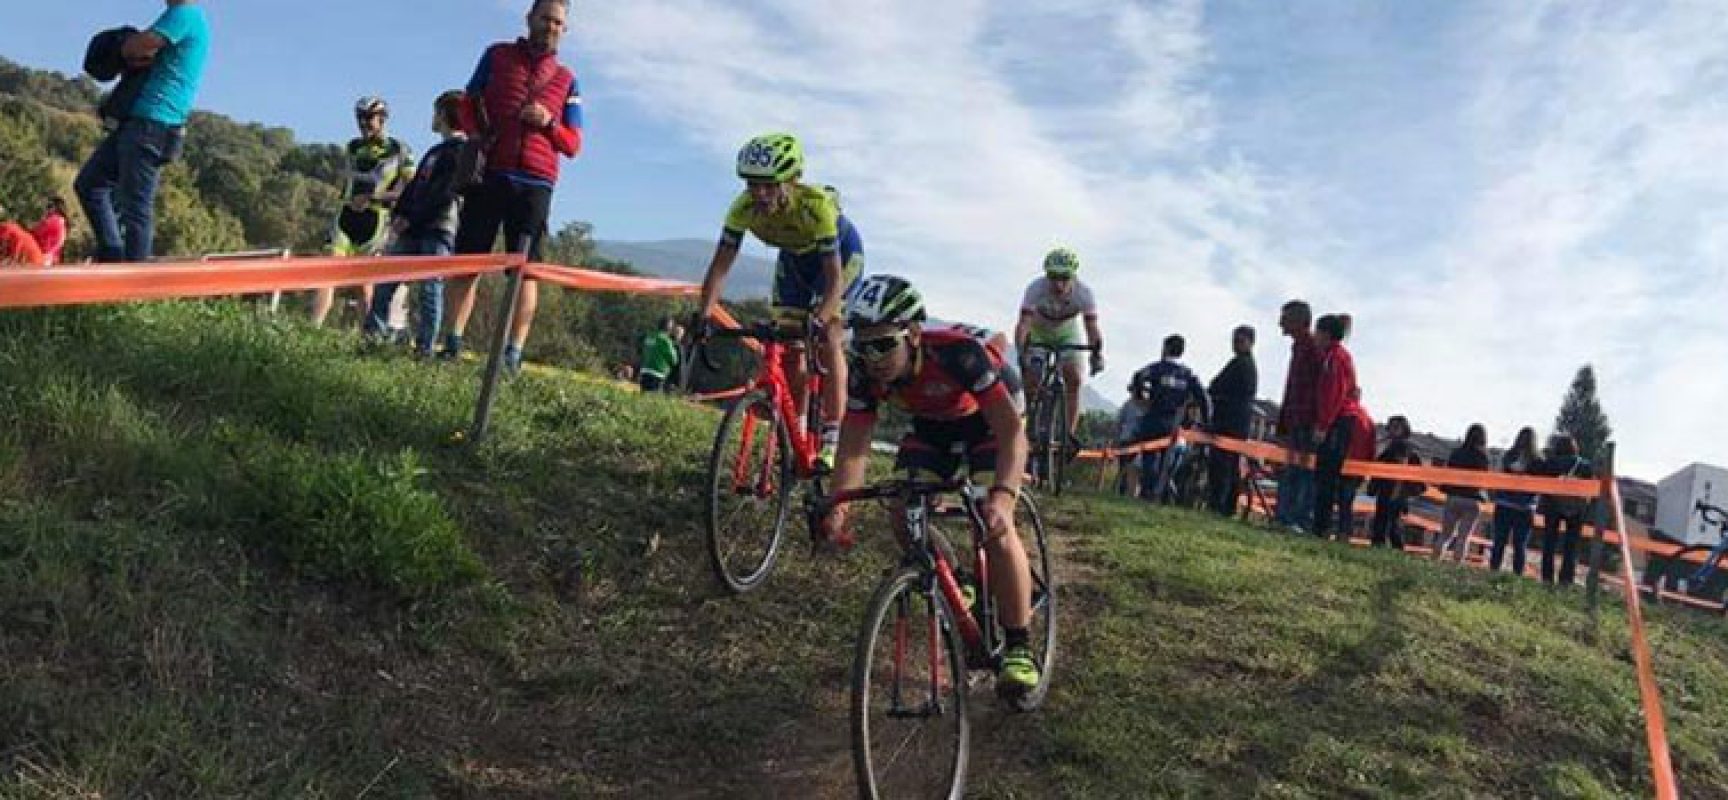 Ludobike, Loconsolo sul podio in Friuli nella terza tappa del Giro d’Italia Ciclocross